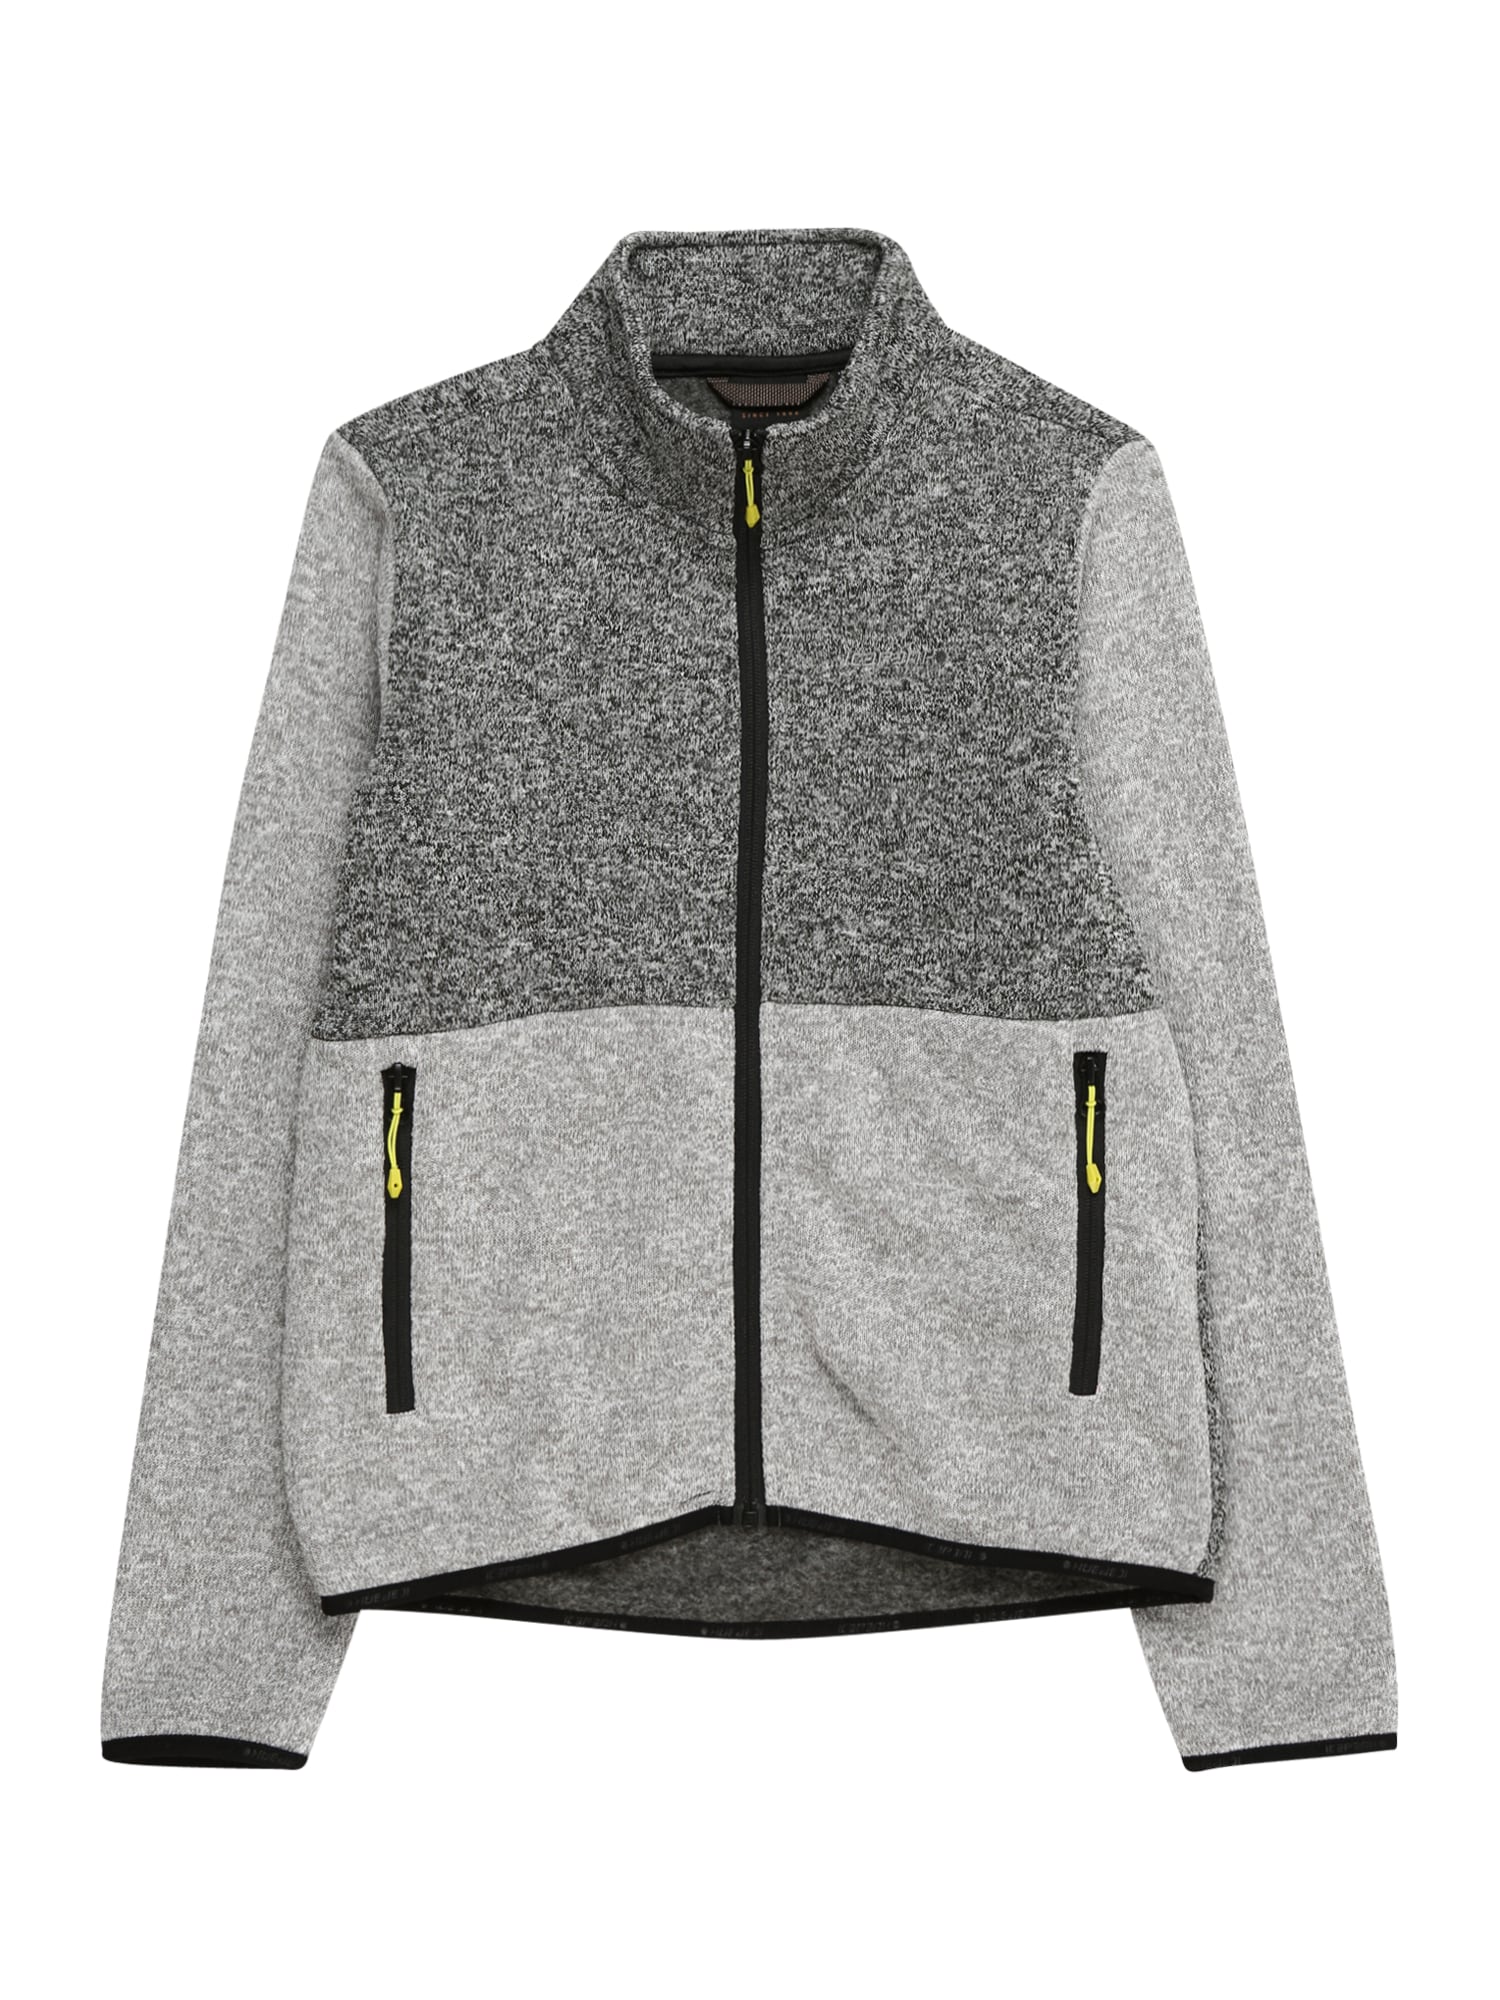 ICEPEAK Jachetă  fleece funcțională  gri / gri metalic / negru